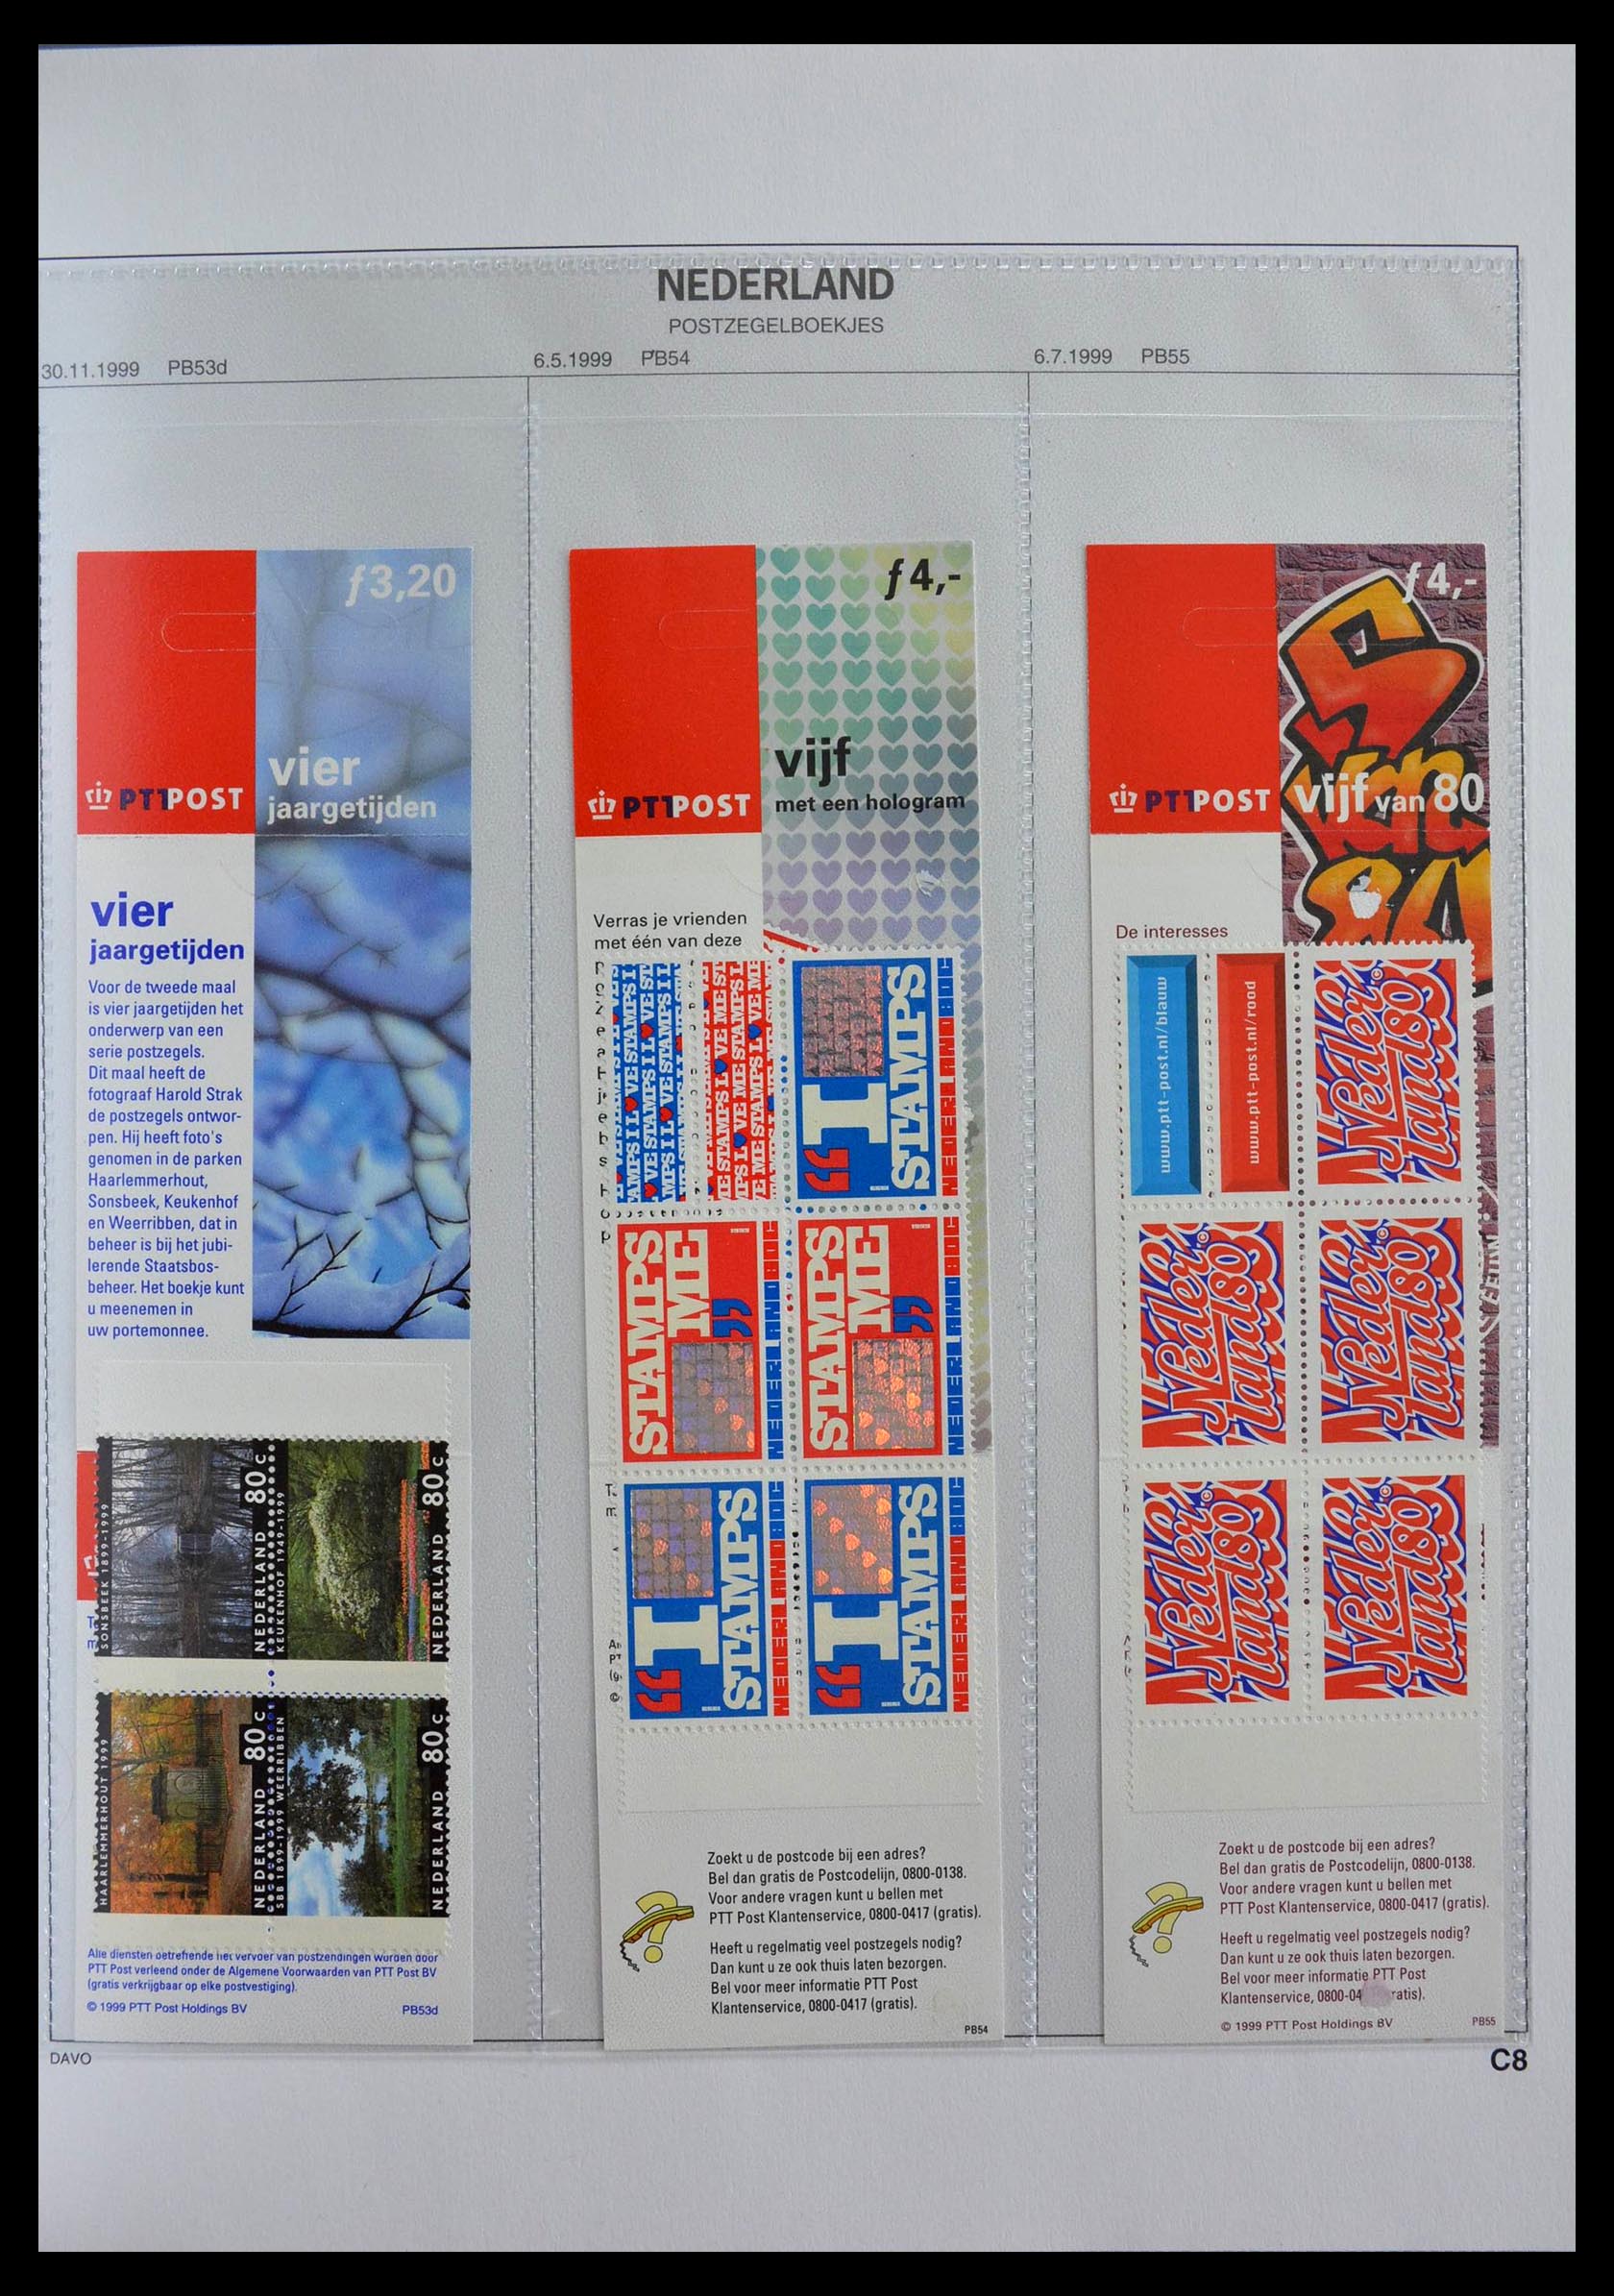 28853 029 - 28853 Netherlands stampbooklets 1964-2005.